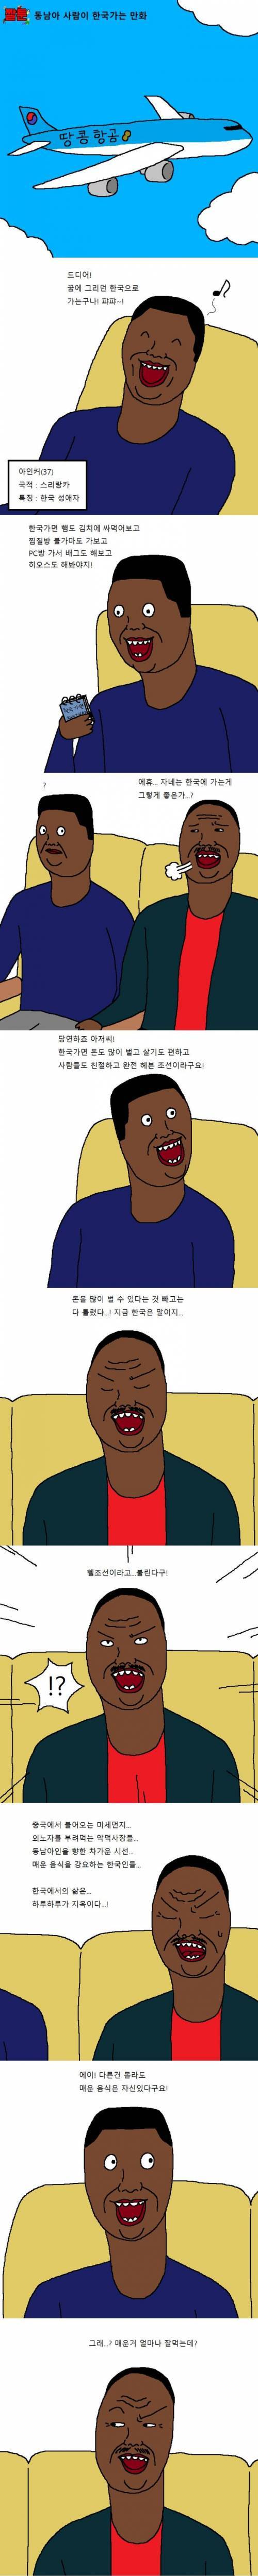 동남아 사람이 한국가는 만화.jpg